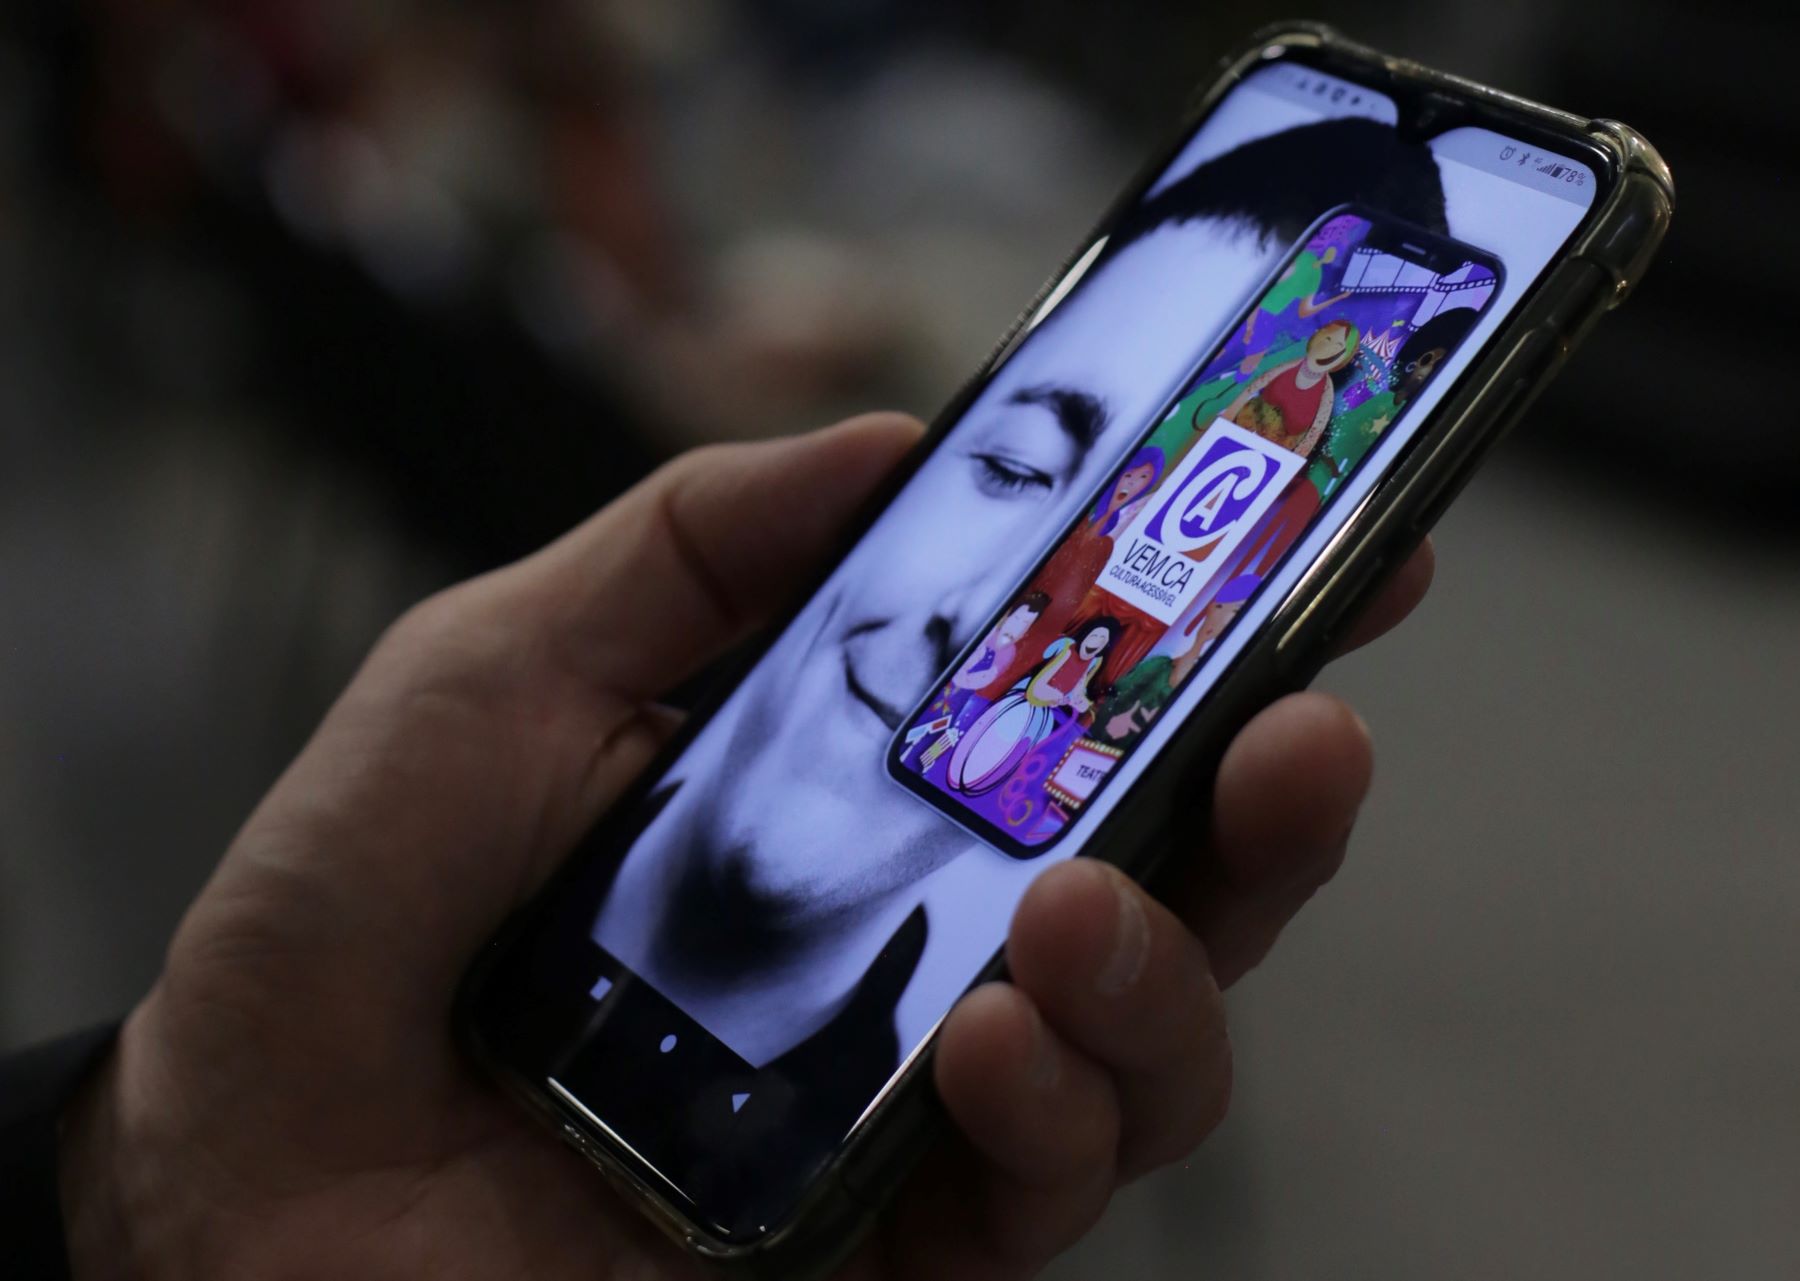 Fotografia mostrando mão segurando celular, que está com a tela inicial do aplicativo Vem Cá aberta